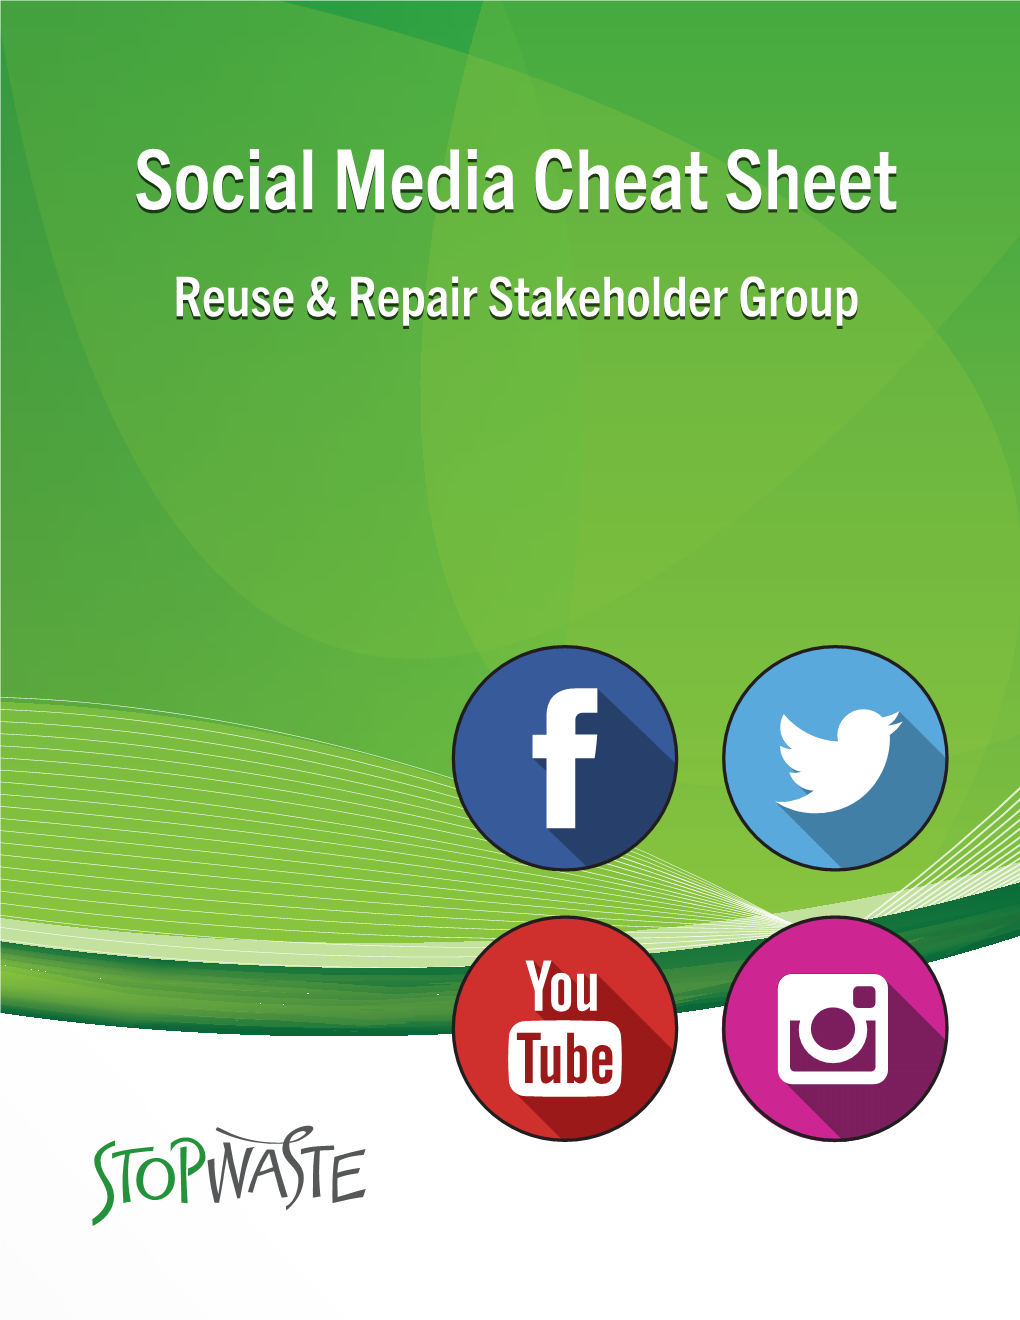 Social Media Cheat Sheet Reuse & Repair Stakeholder Group Stopwaste on Social Media